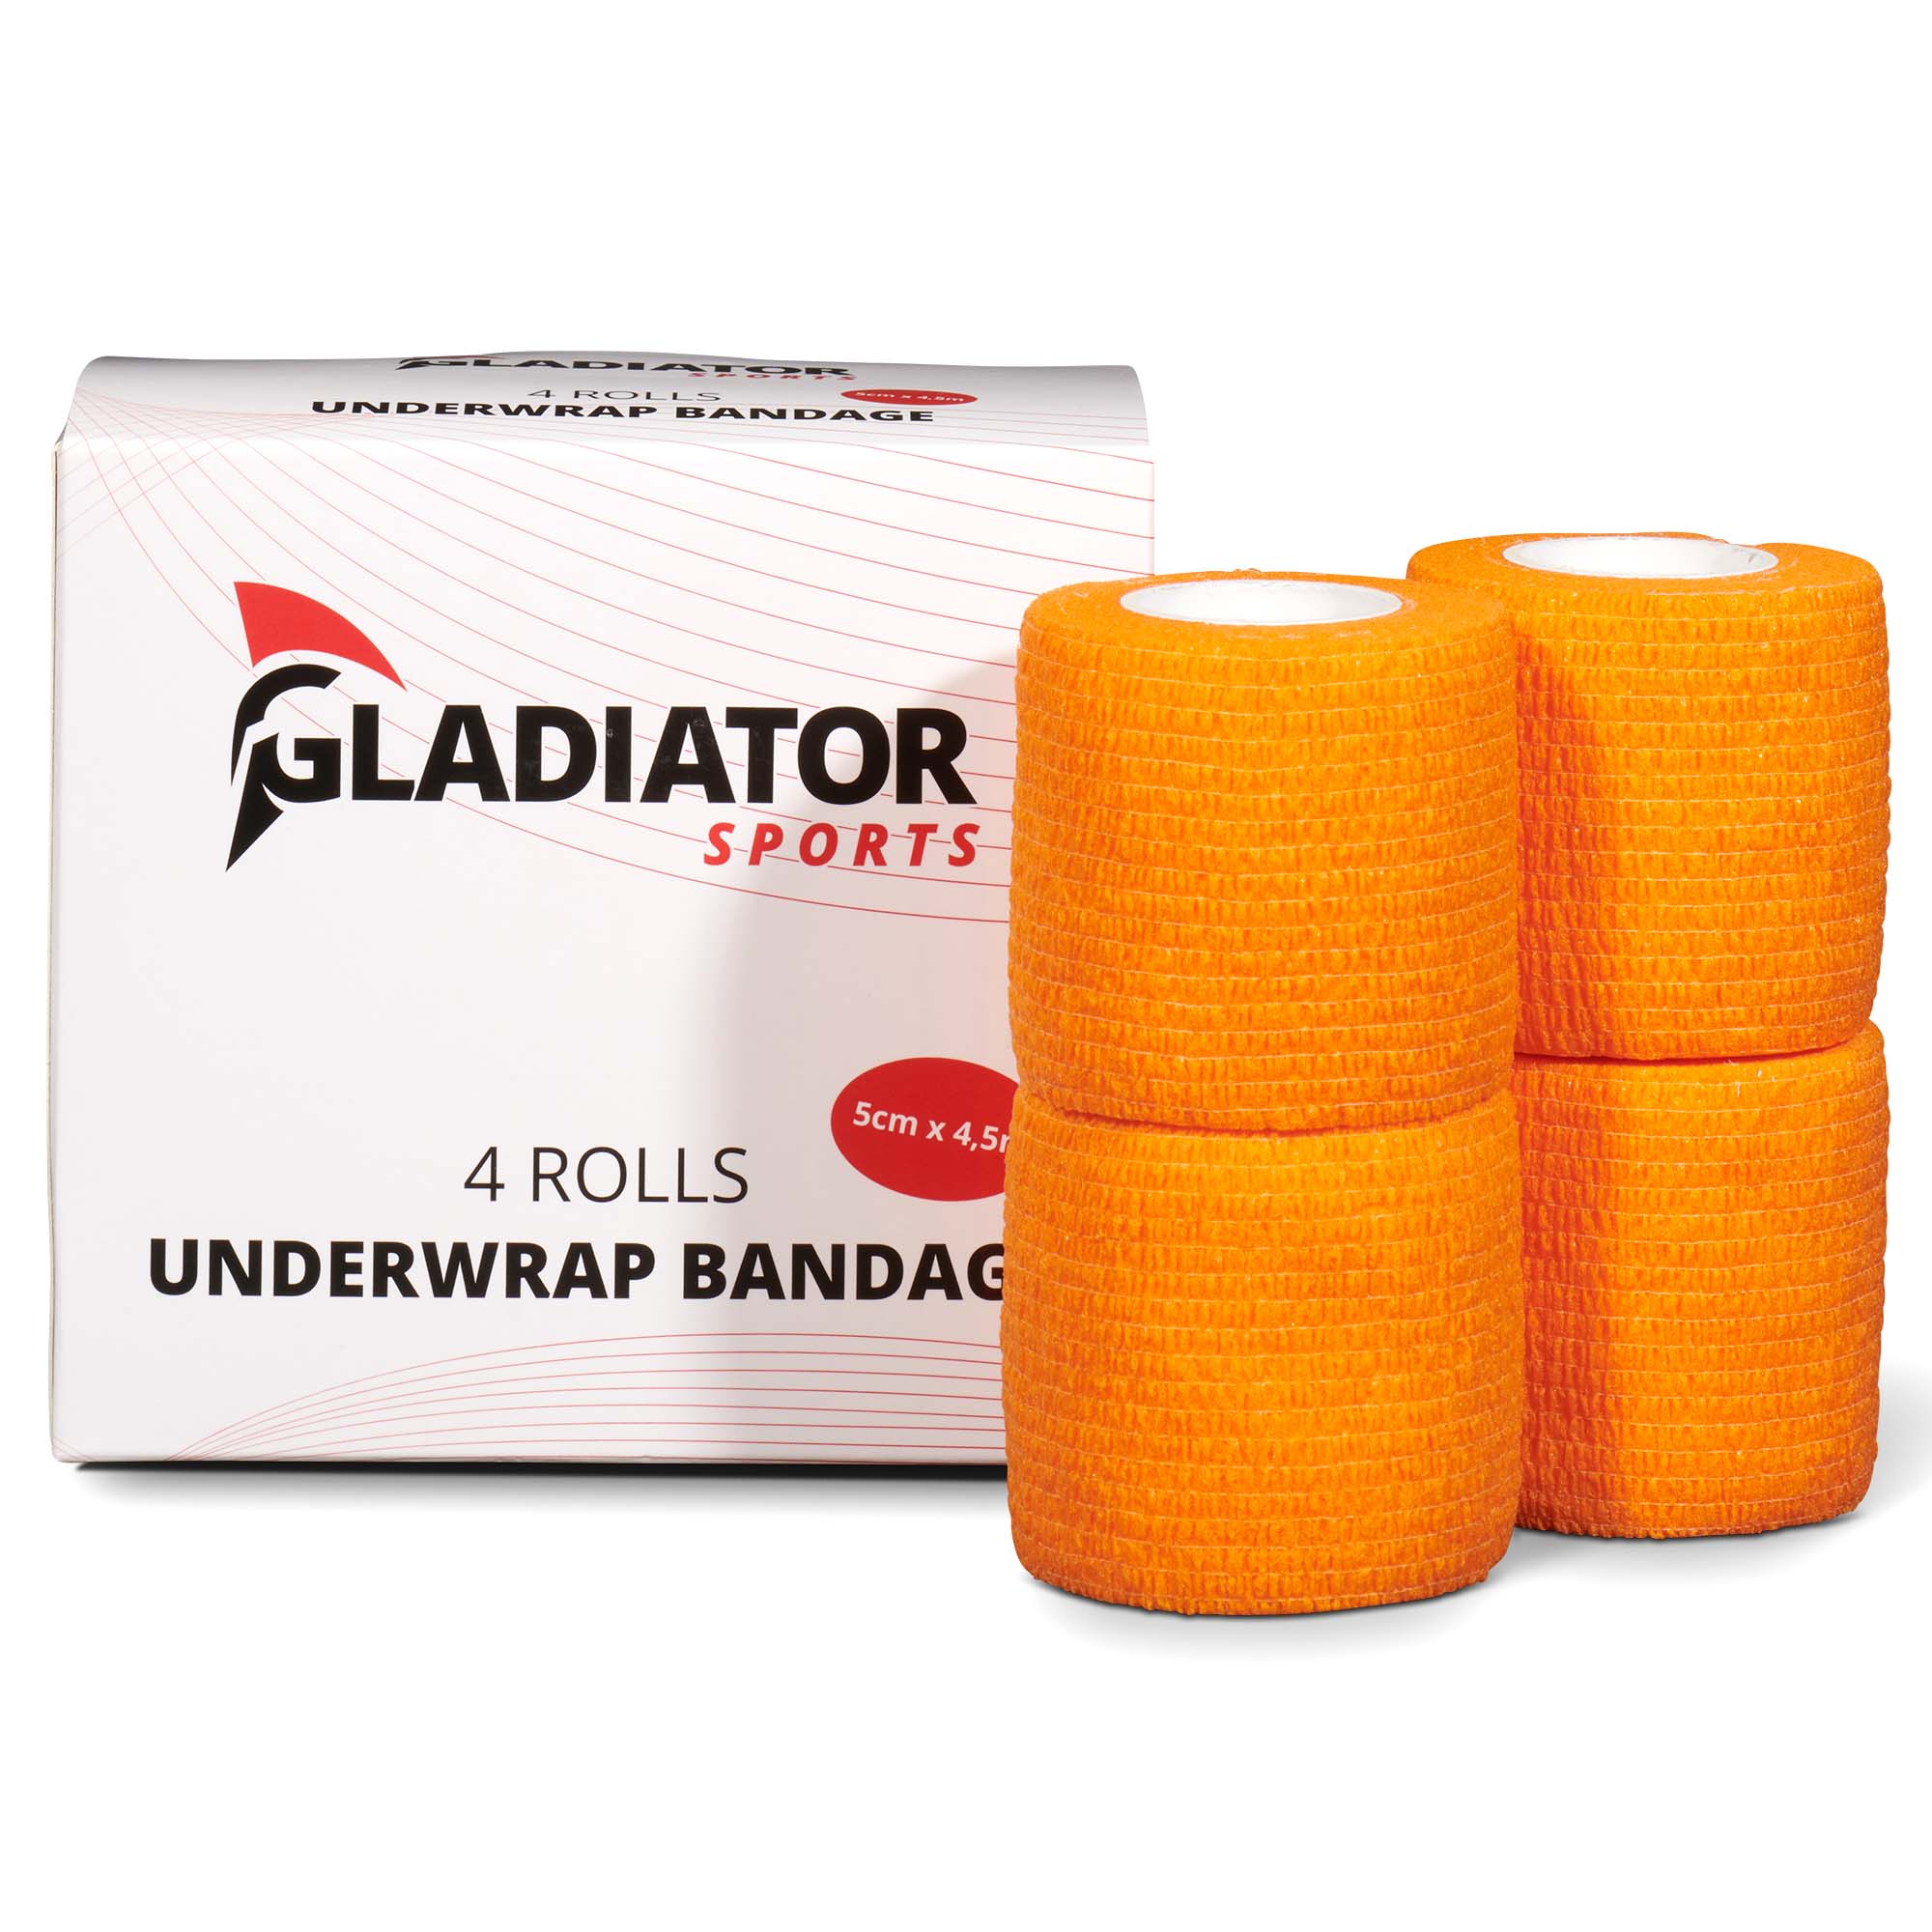 Gladiator Sports underwrap bandage 4 rolls with box orange